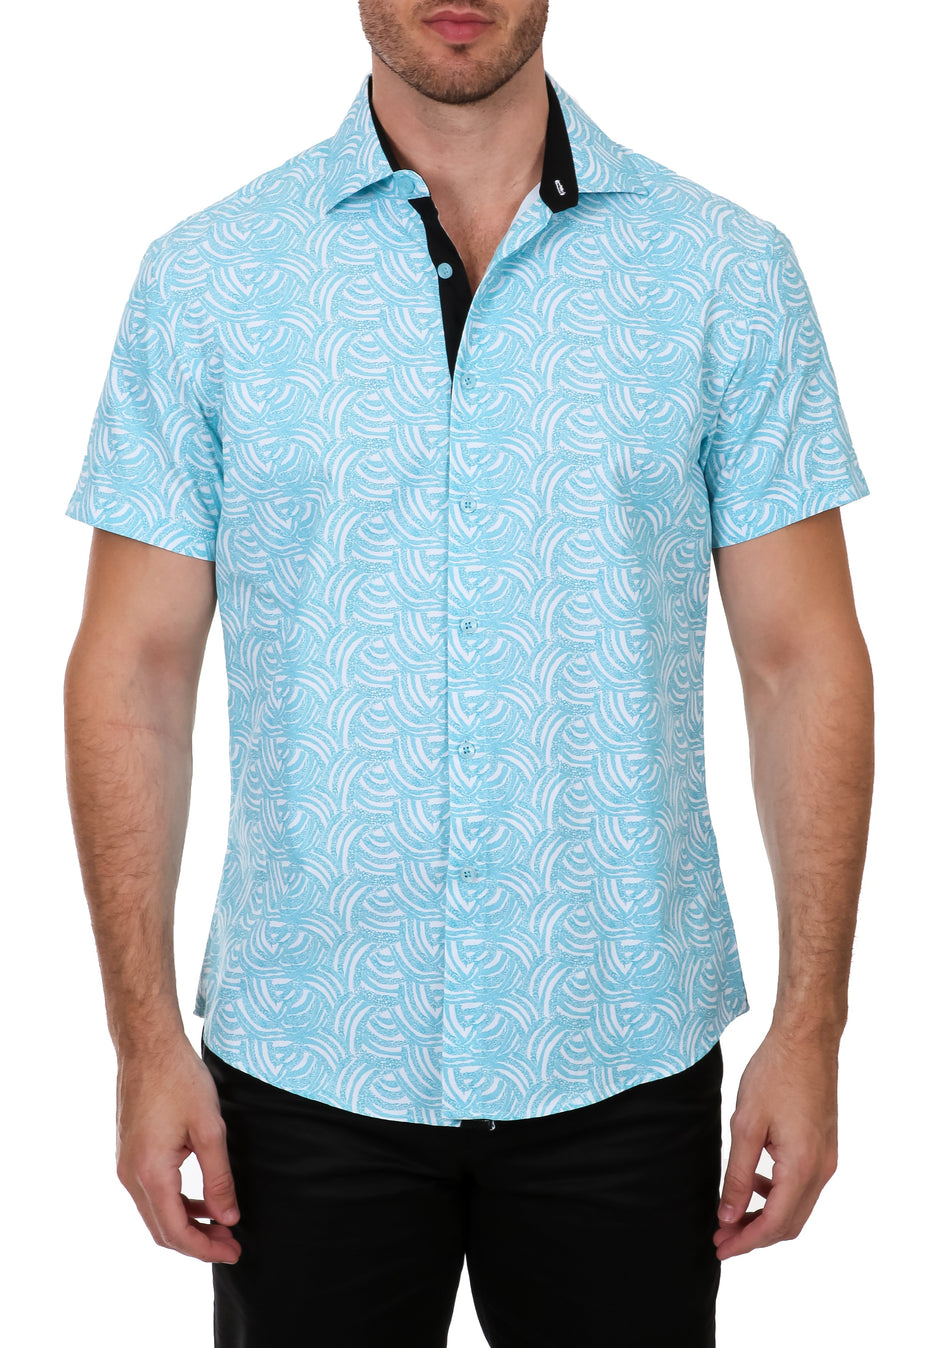 Turquoise Wavy Short Sleeve Dress Shirt